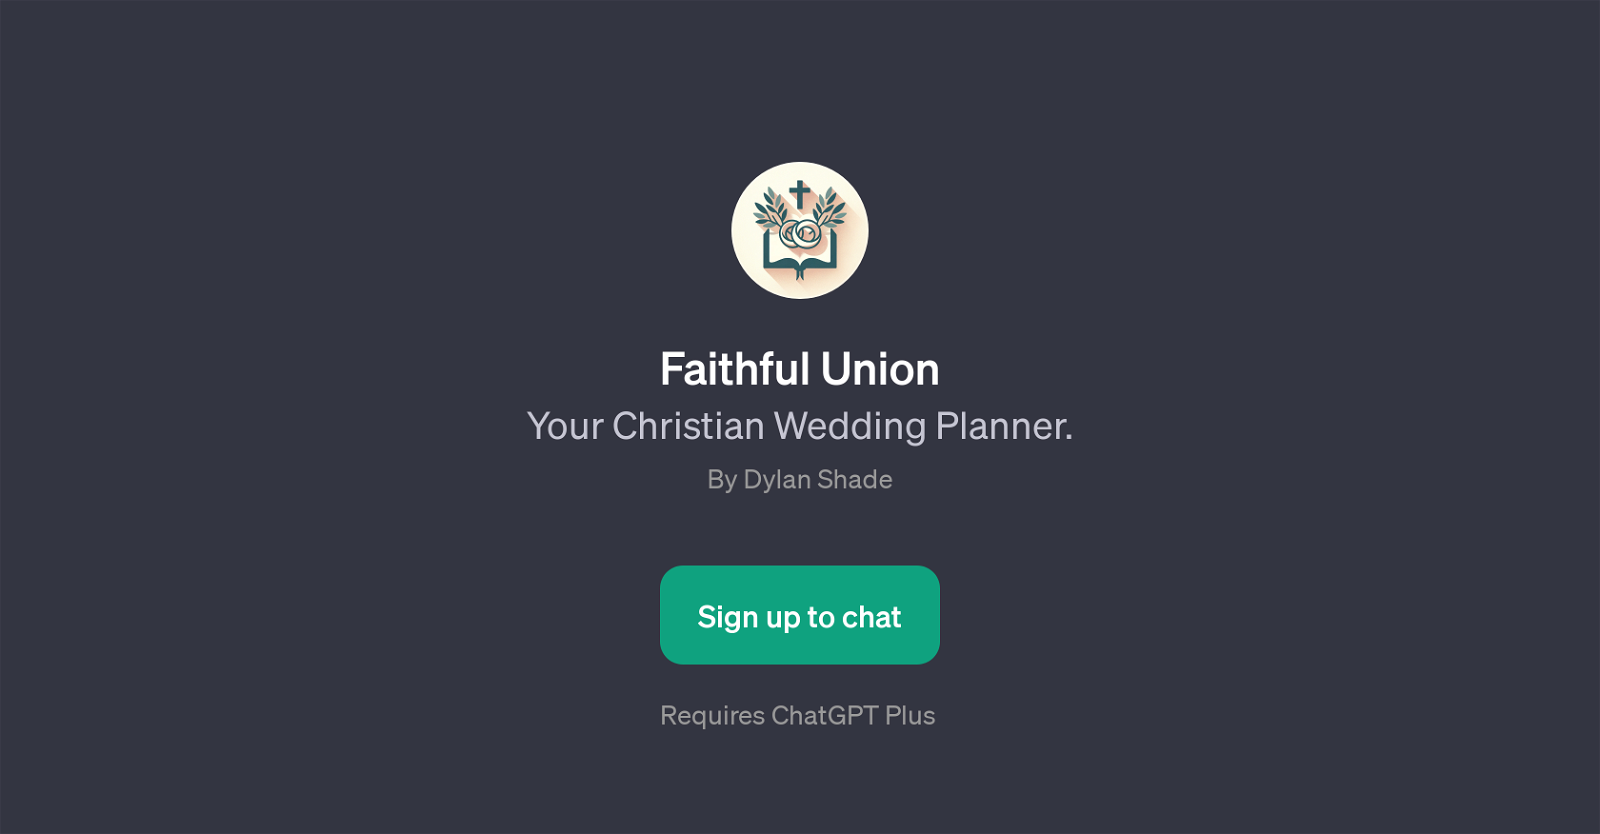 Faithful Union website